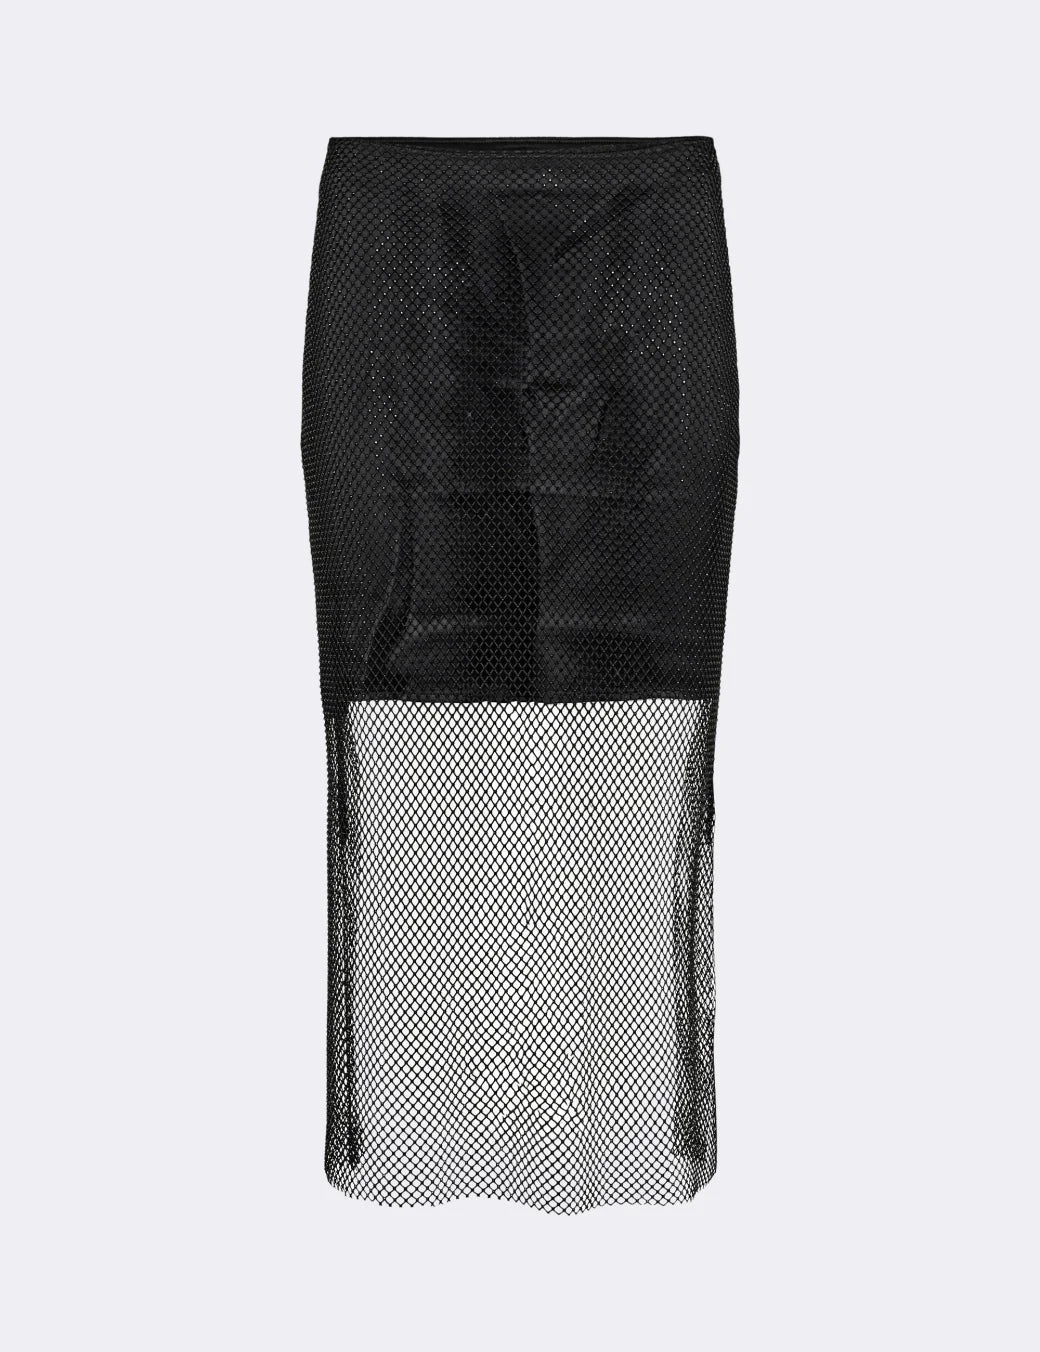 Ember 1 Skirt